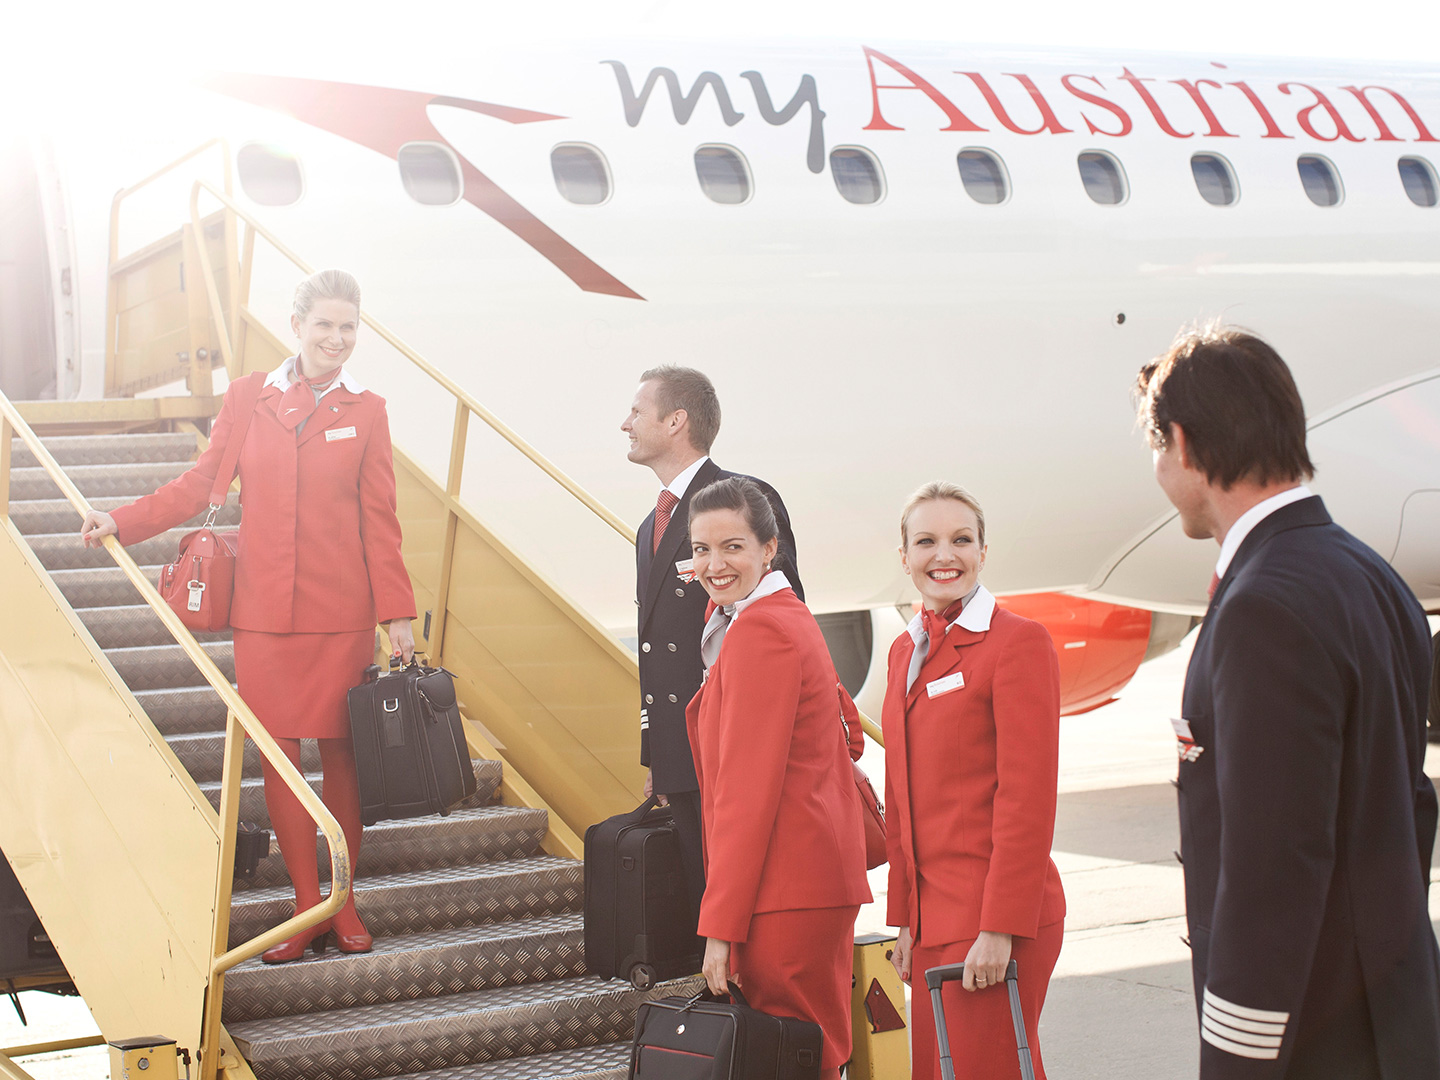 Foto: Services Team Austrian Airlines Flughafen